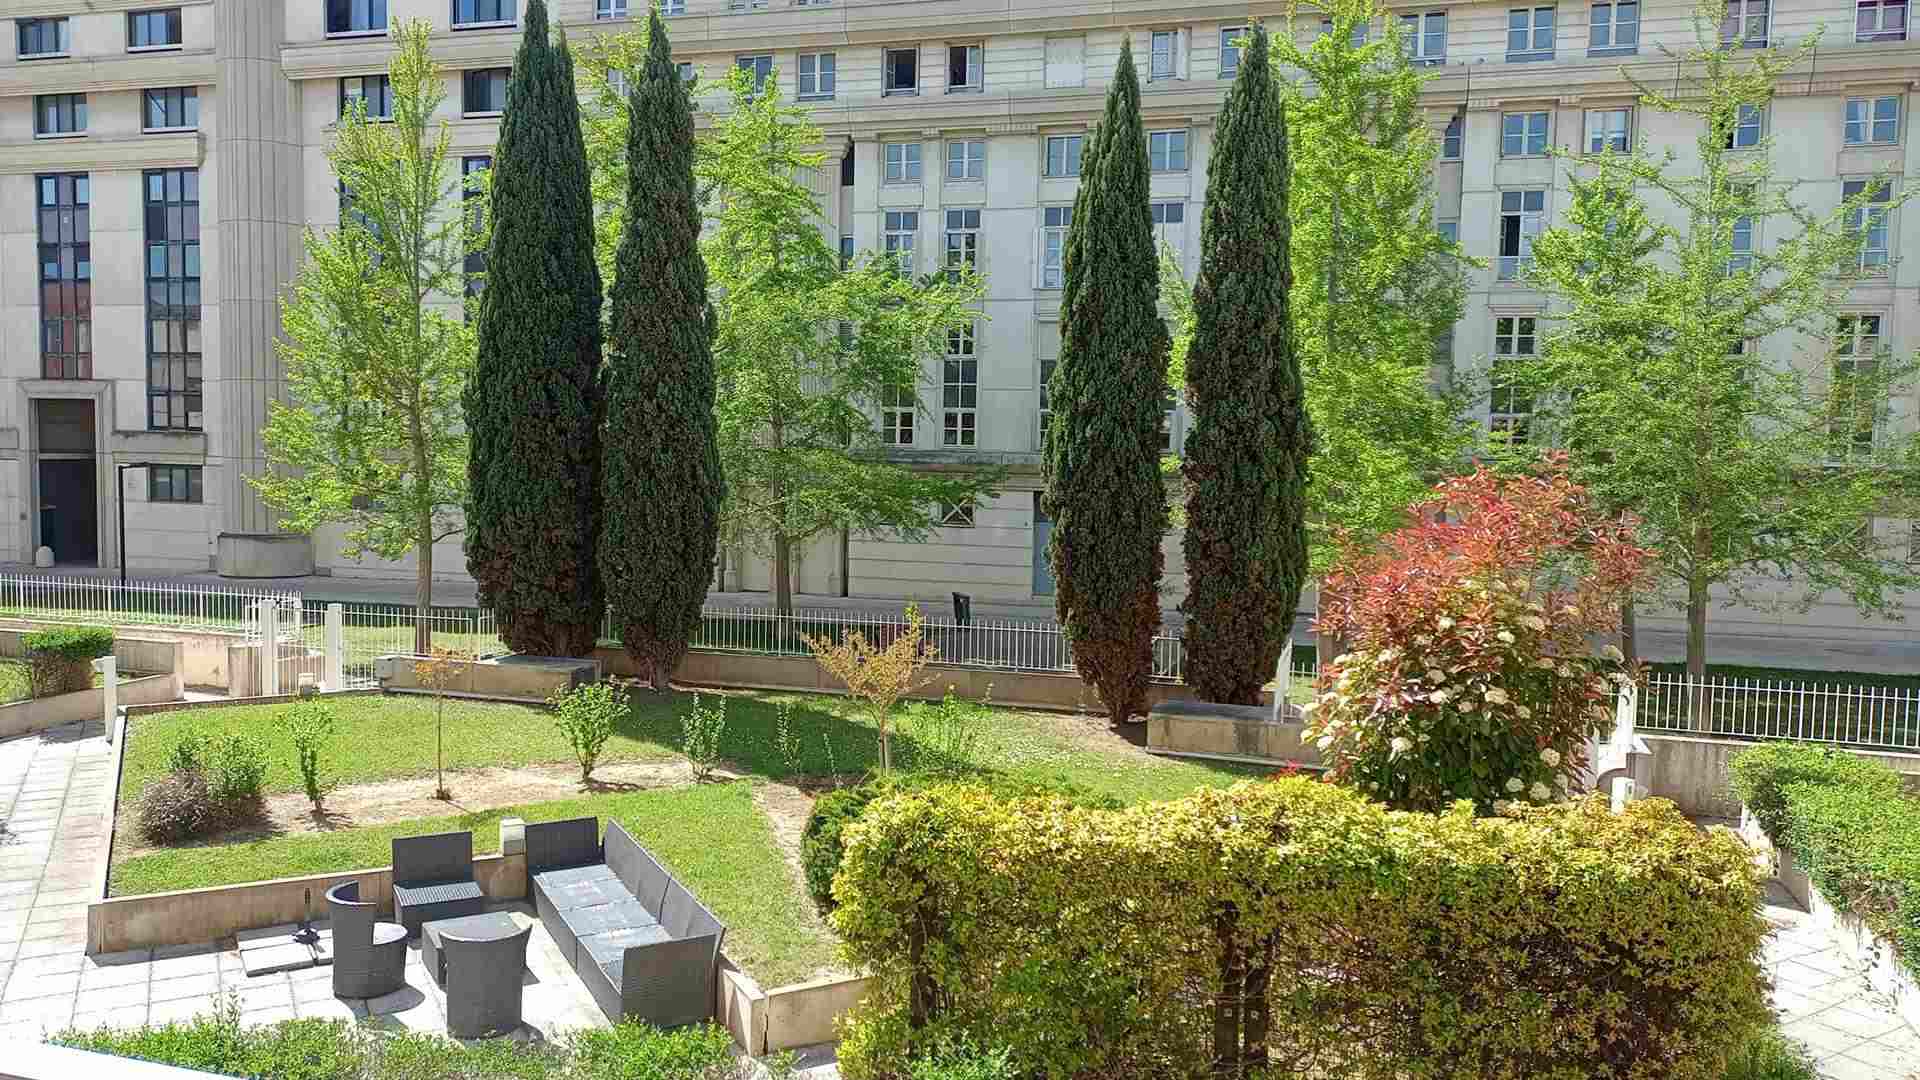 Blick auf einen kleinen Innenhof mit Garten in Montpellier